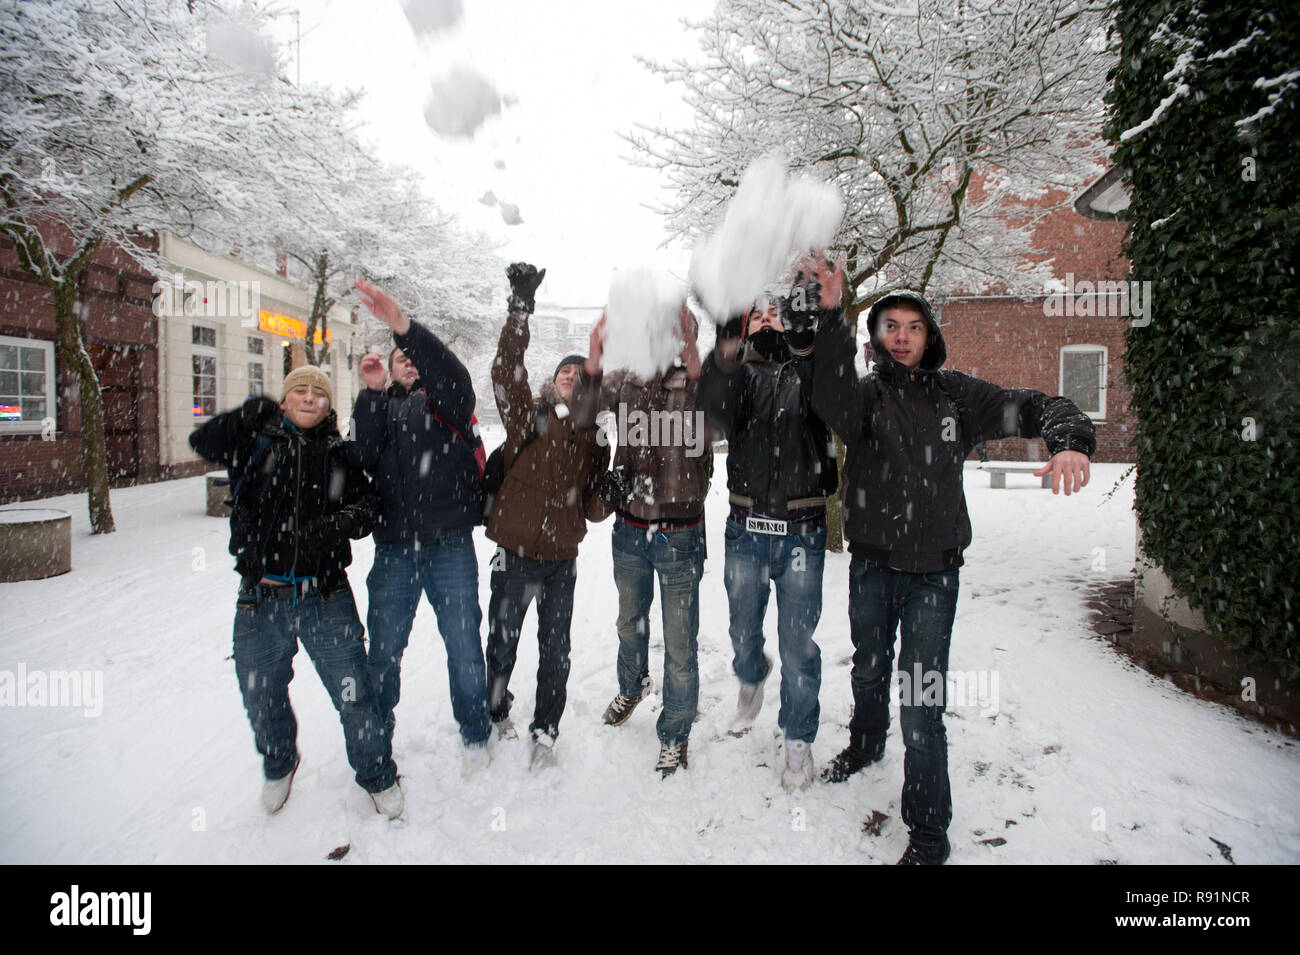 13.12.2010, Itzehoe, Schleswig-Holstein, Germany - Jungs amuesieren sich im Schnee in Itzehoe. 0RX101213D372CAROEX.JPG [MODEL RELEASE: NO, PROPERTY RE Stock Photo